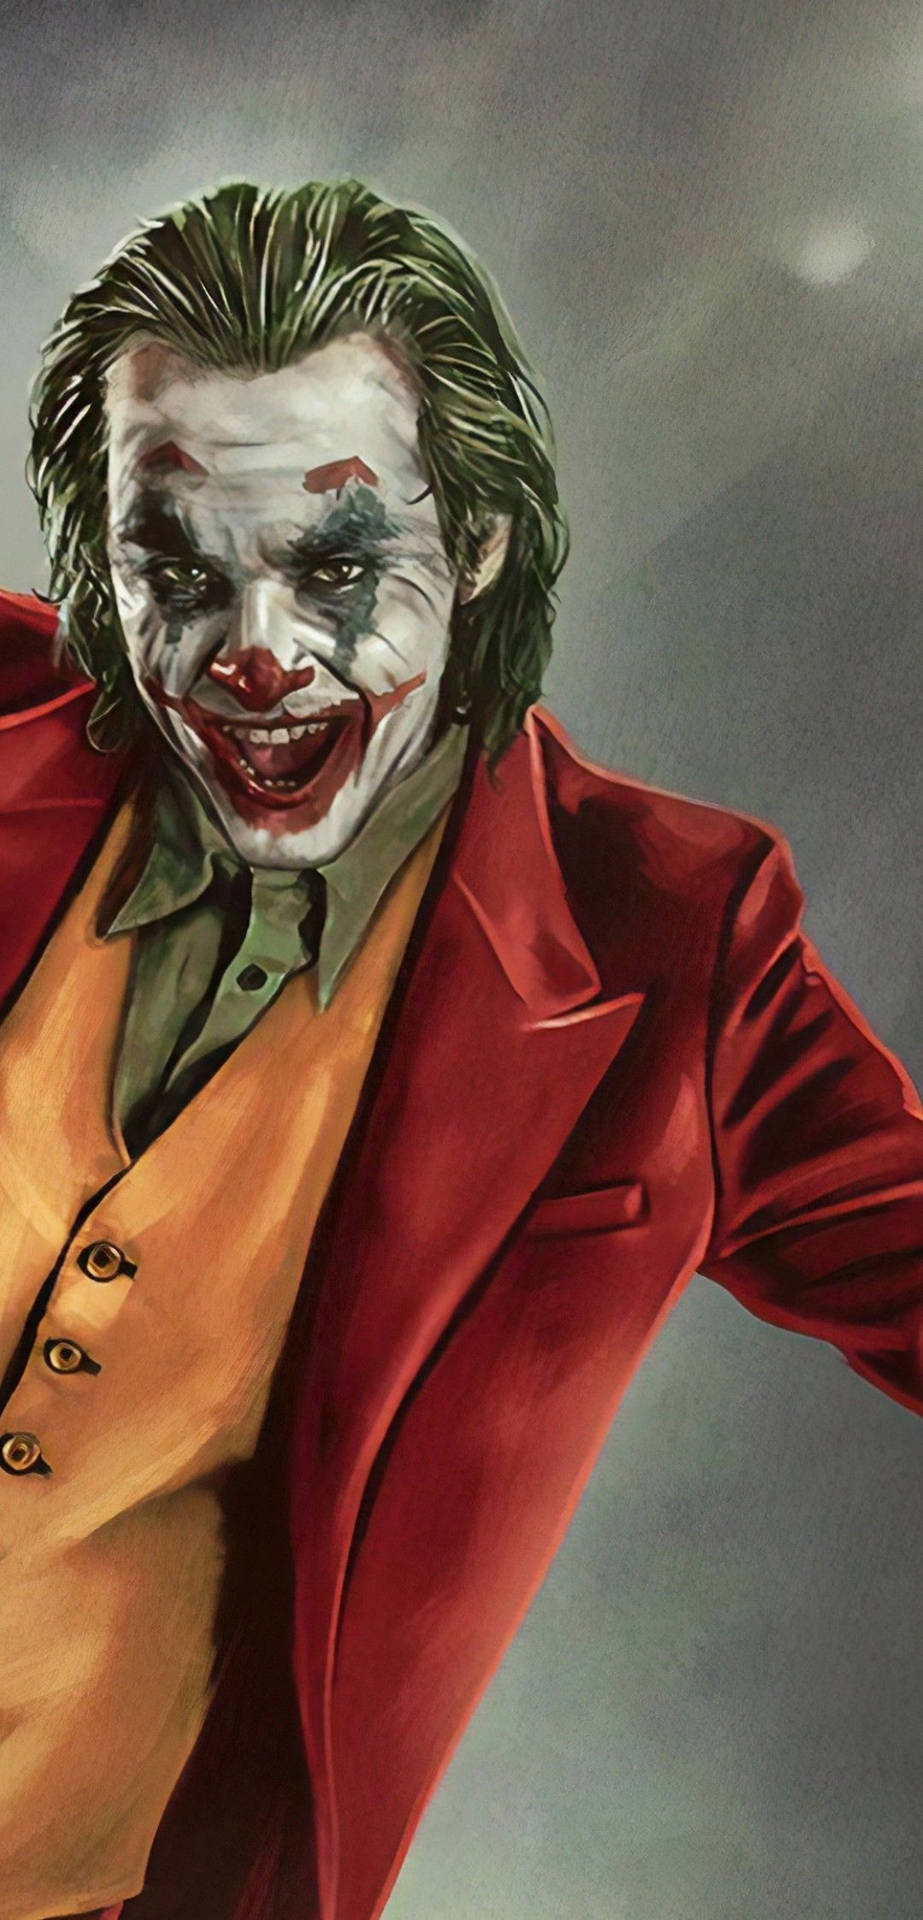 Joker 2019 Artwork Background